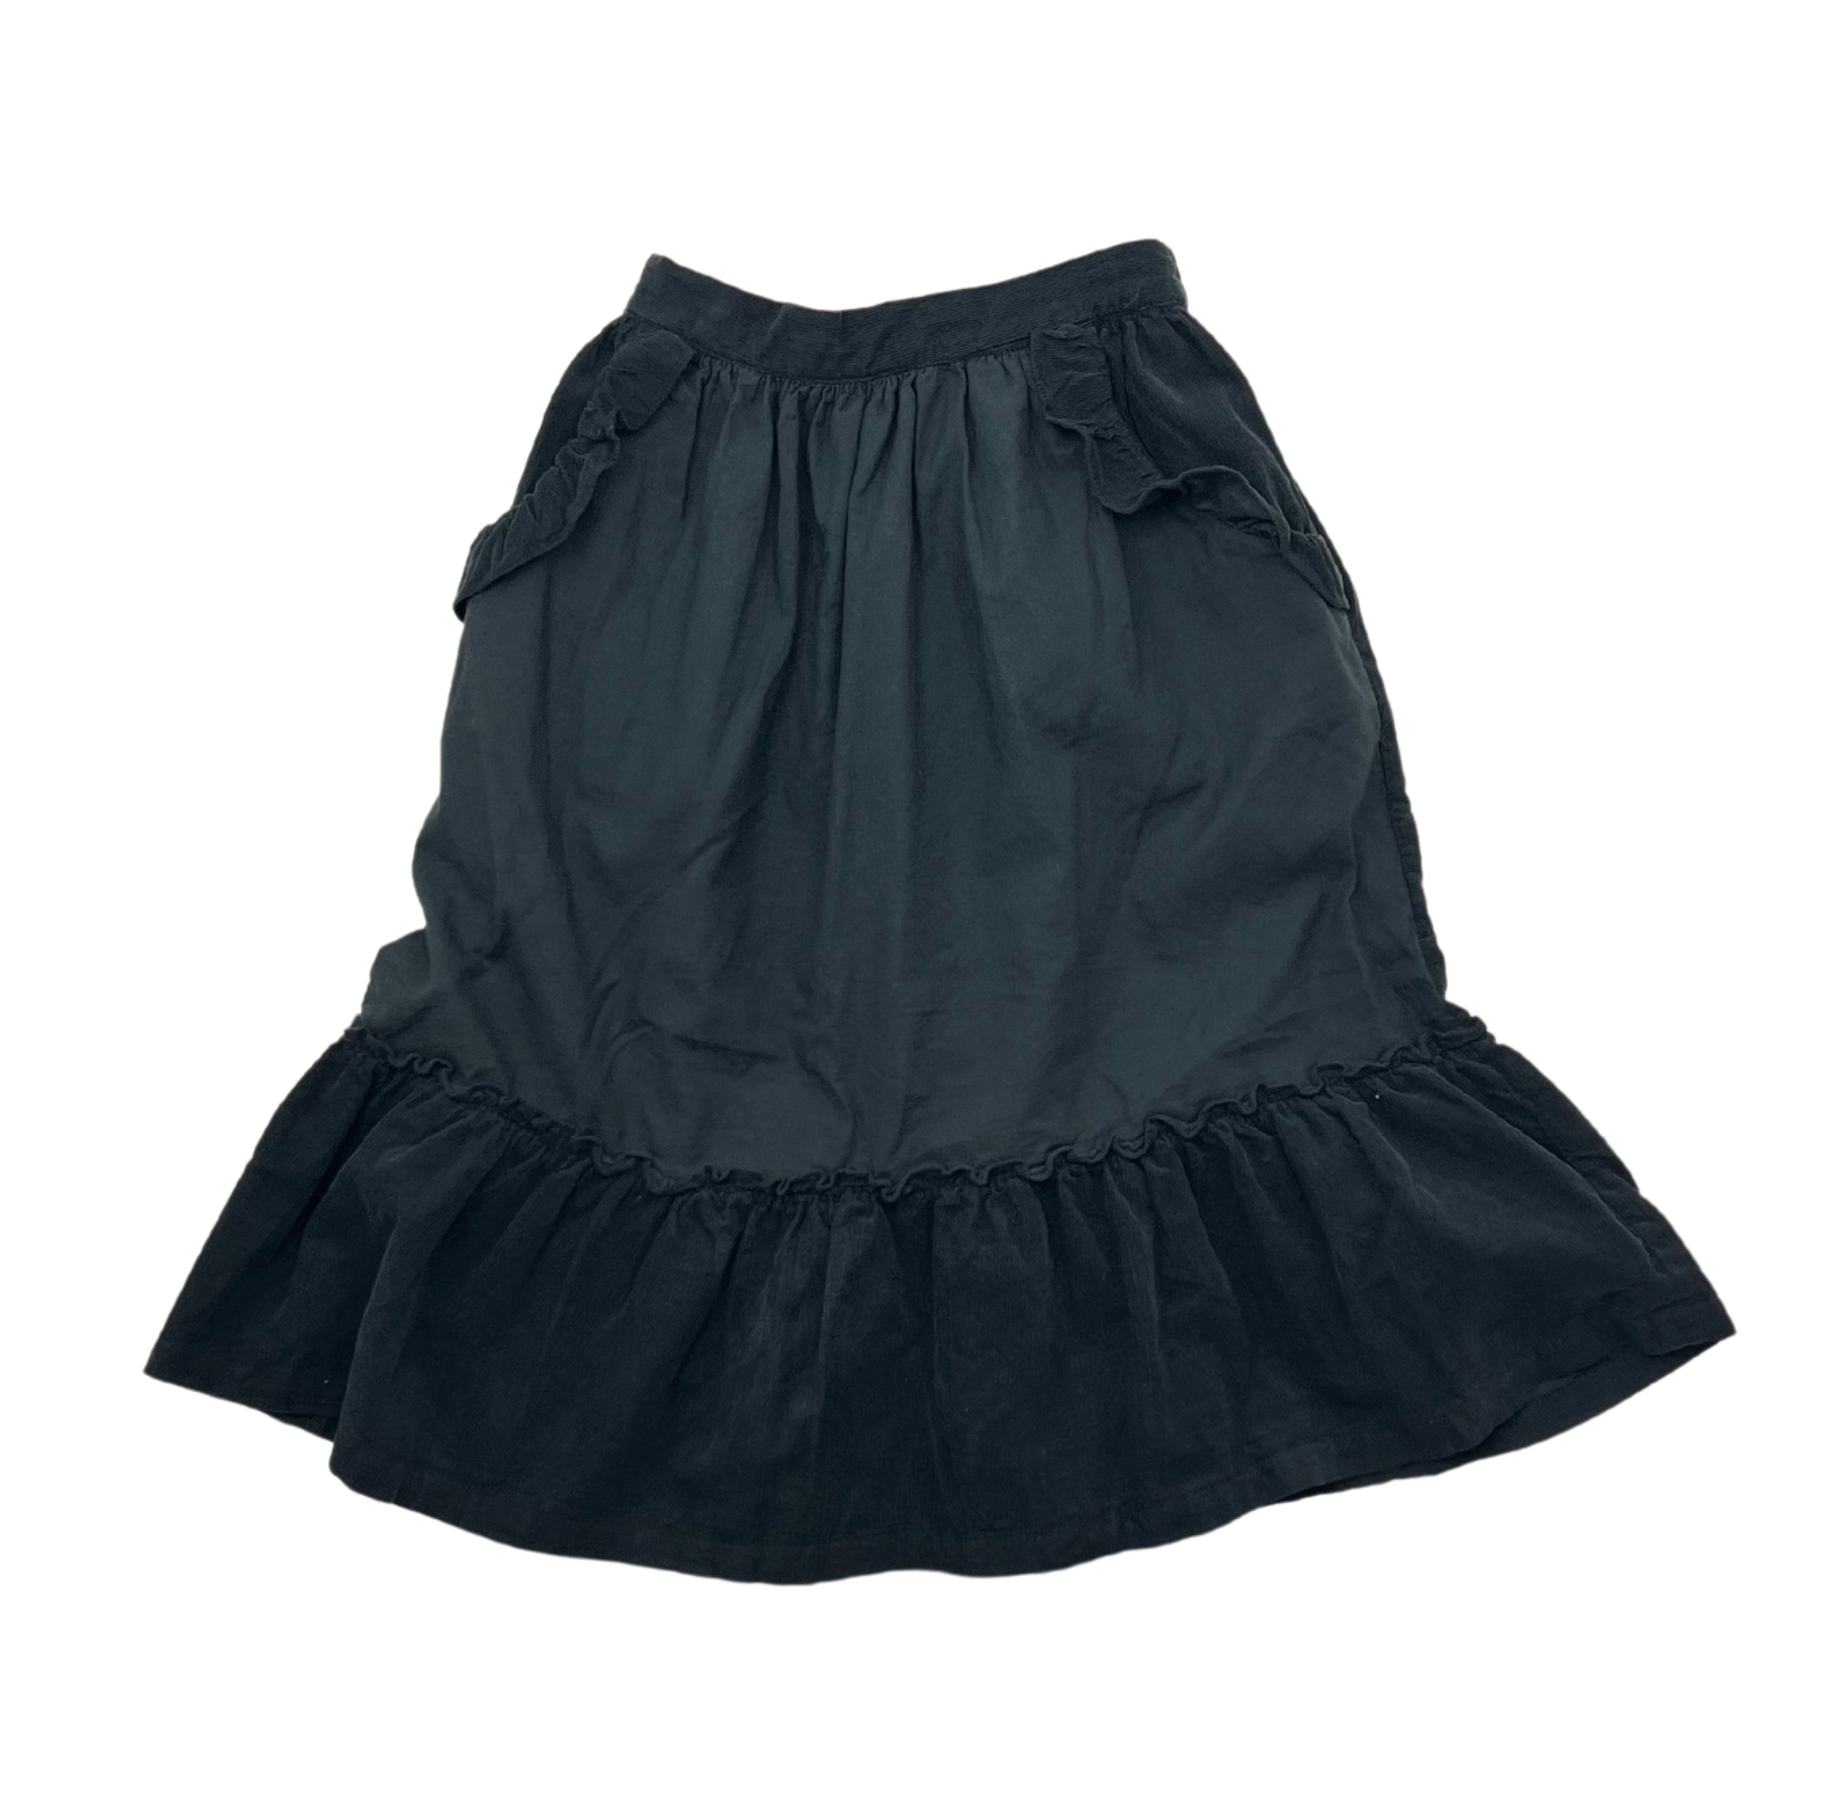 BONTON - Velvet skirt - 4 years old